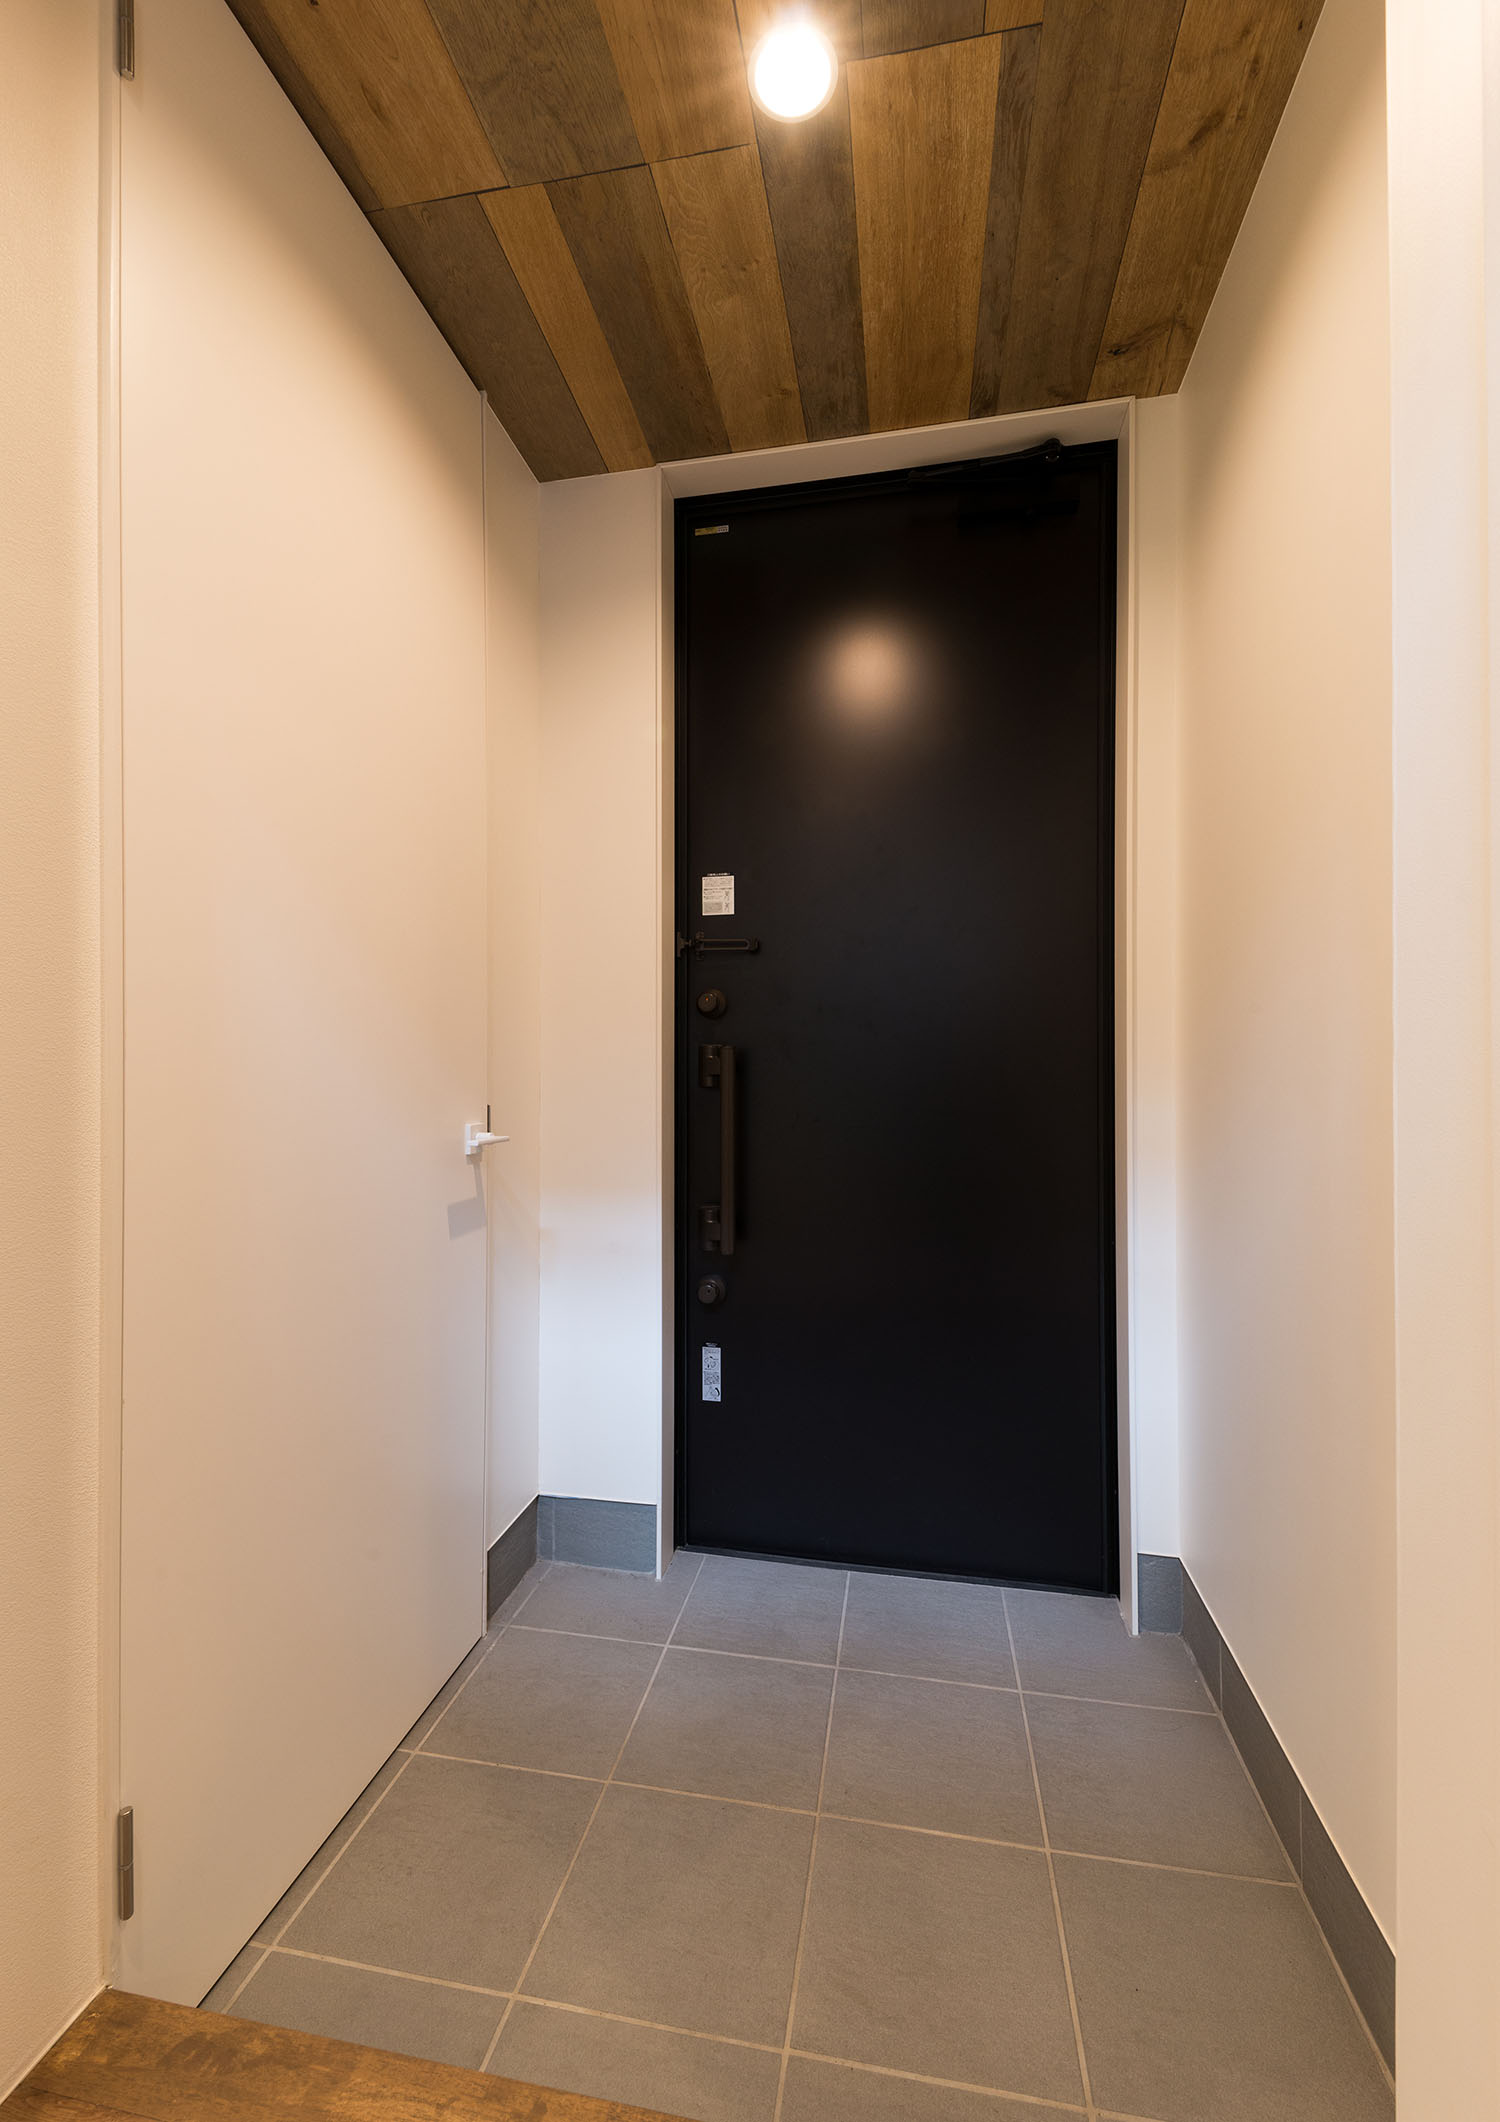 木目の天井とタイルの床で、扉が黒い玄関・デザイン住宅